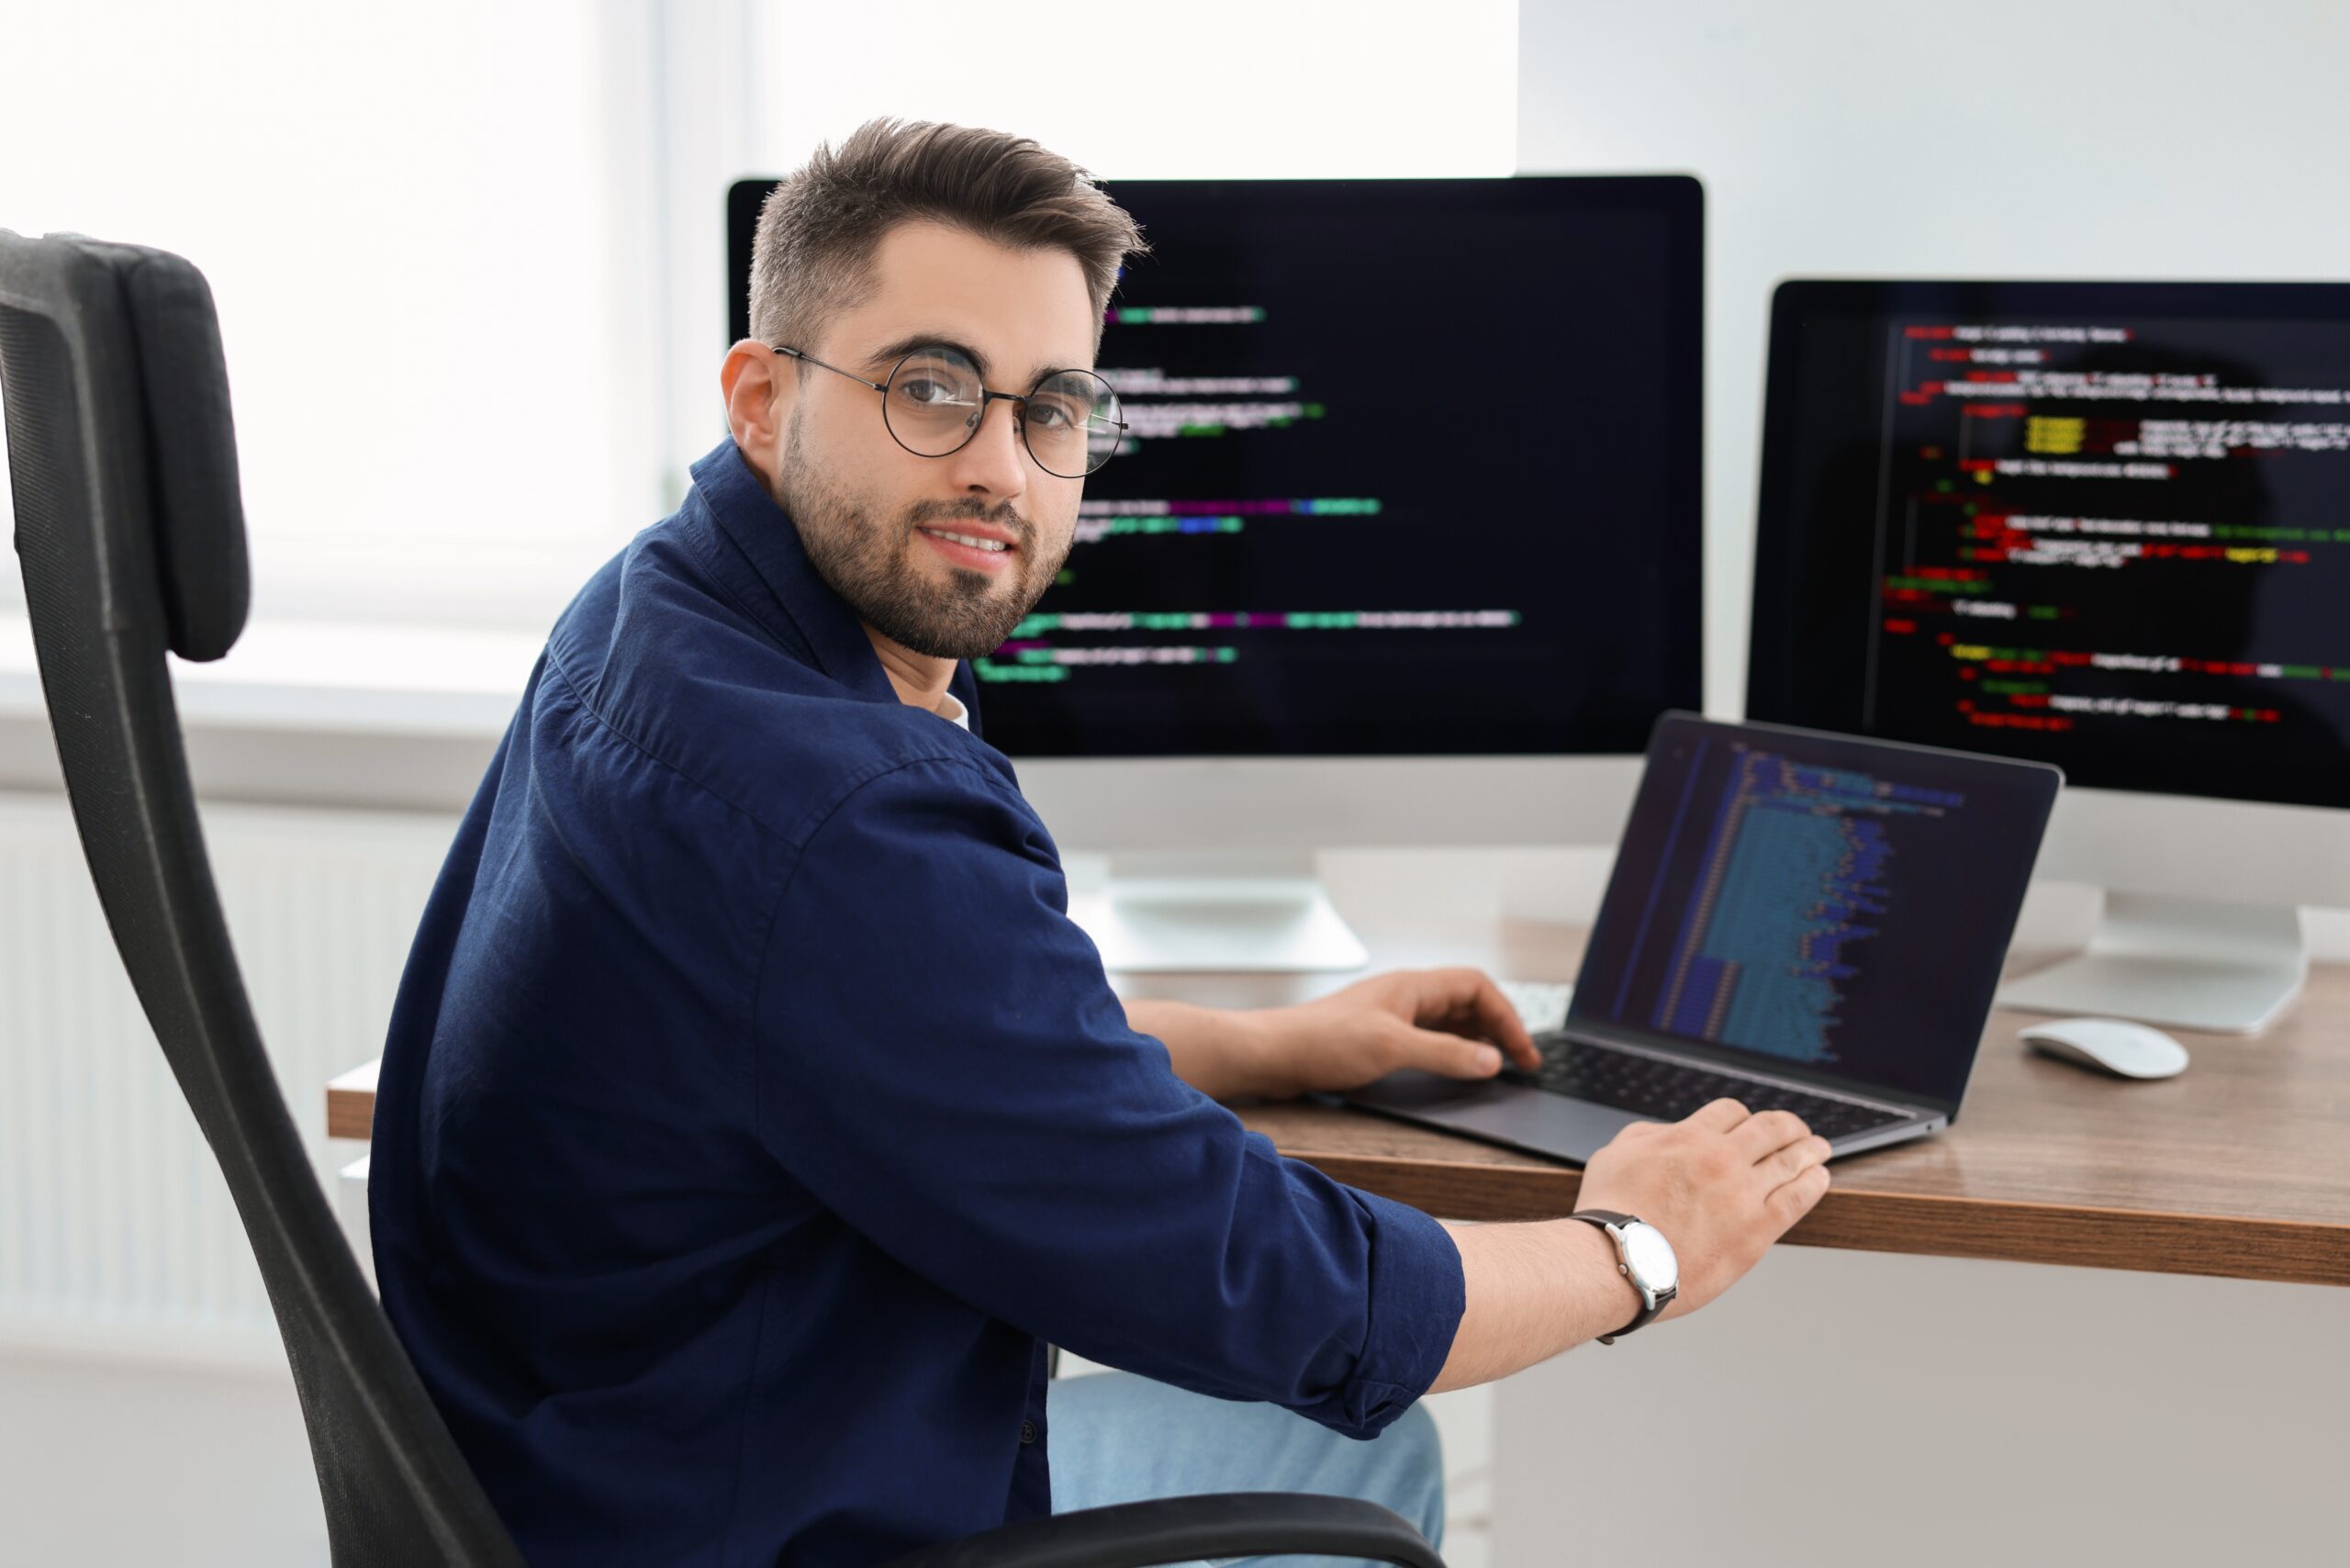 Mężczyzna siedzący przy biurku, pracujący na laptopie z ekranem pełnym kodu, z dwoma monitorami w tle również wyświetlającymi kod.